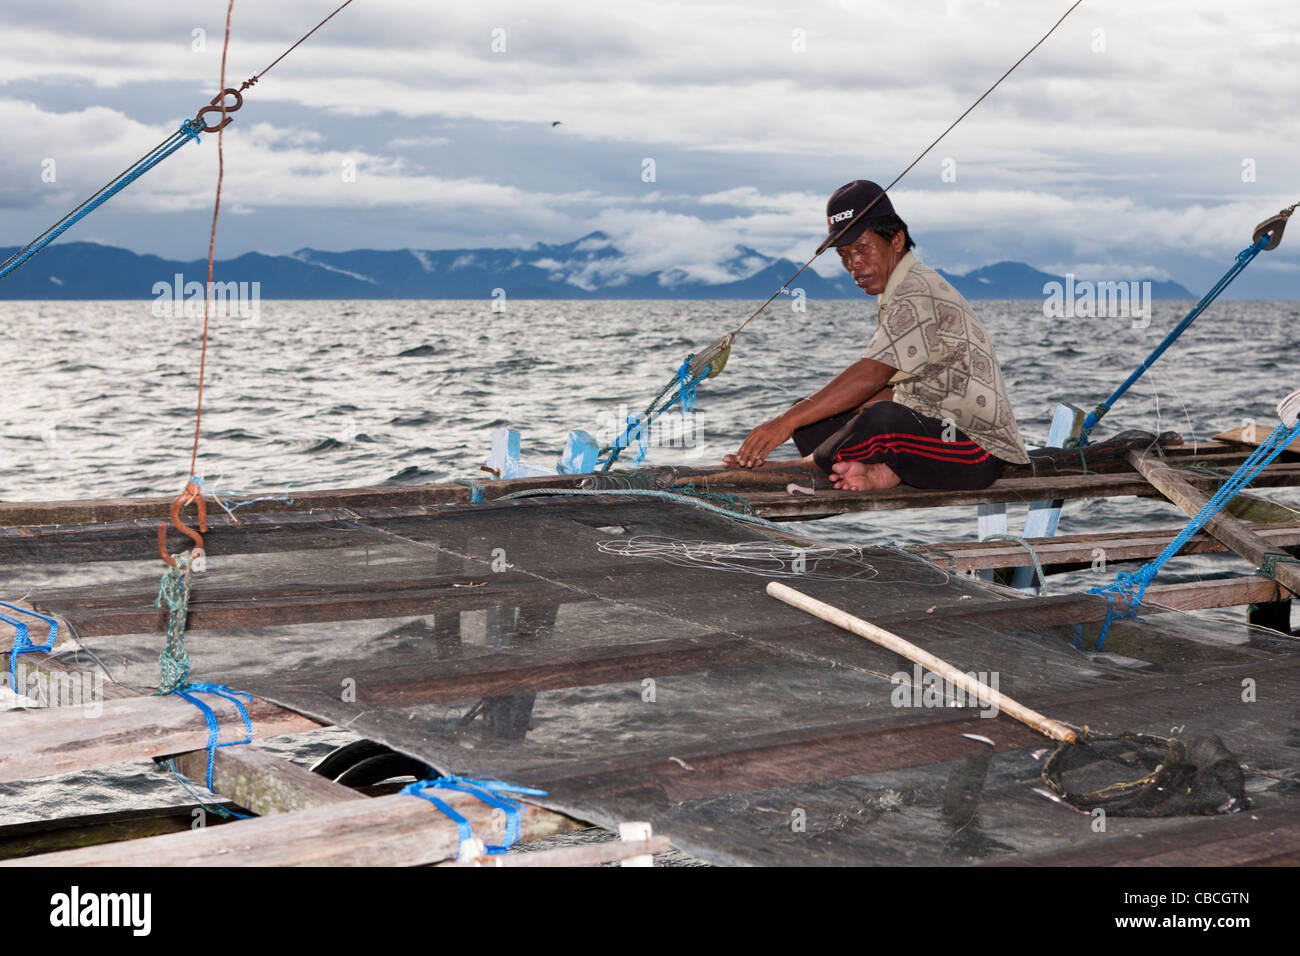 Fishermen living on Fishing Platform called Bagan, Cenderawasih Bay, West Papua, Indonesia Stock Photo